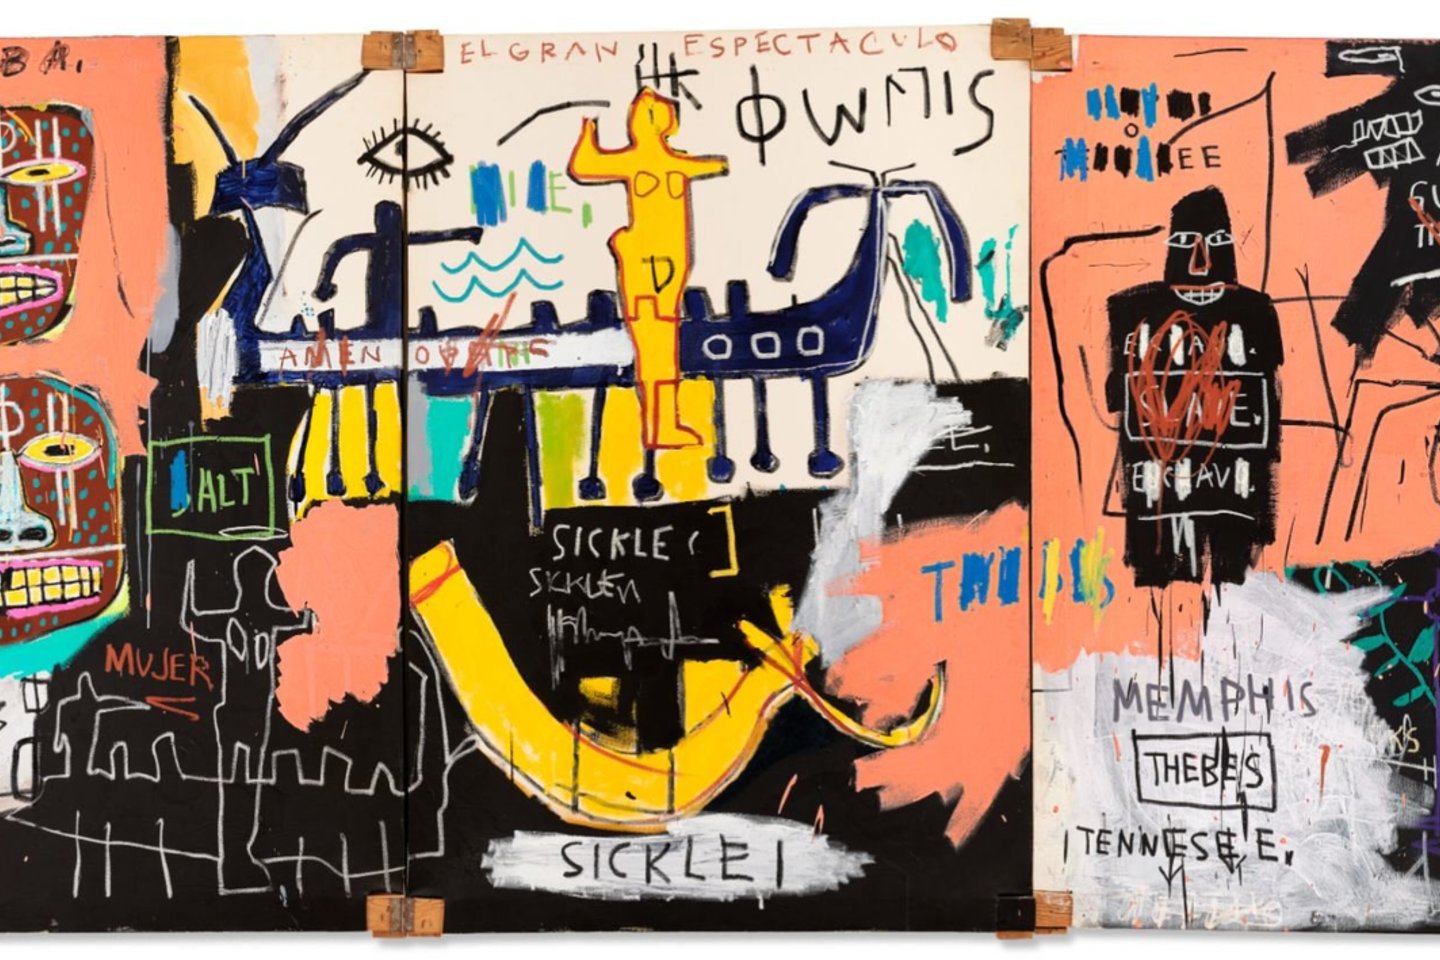 Amerikiečių dailininko J.M.Basquiat paveikslas „El Gran Espectaculo“ („Nilas“) – praėjusio sezono šiuolaikinio meno aukcionų rekordininkas: jis buvo parduotas už 67 mln. dolerių.<br>Nuotr. iš „Wikipedia“